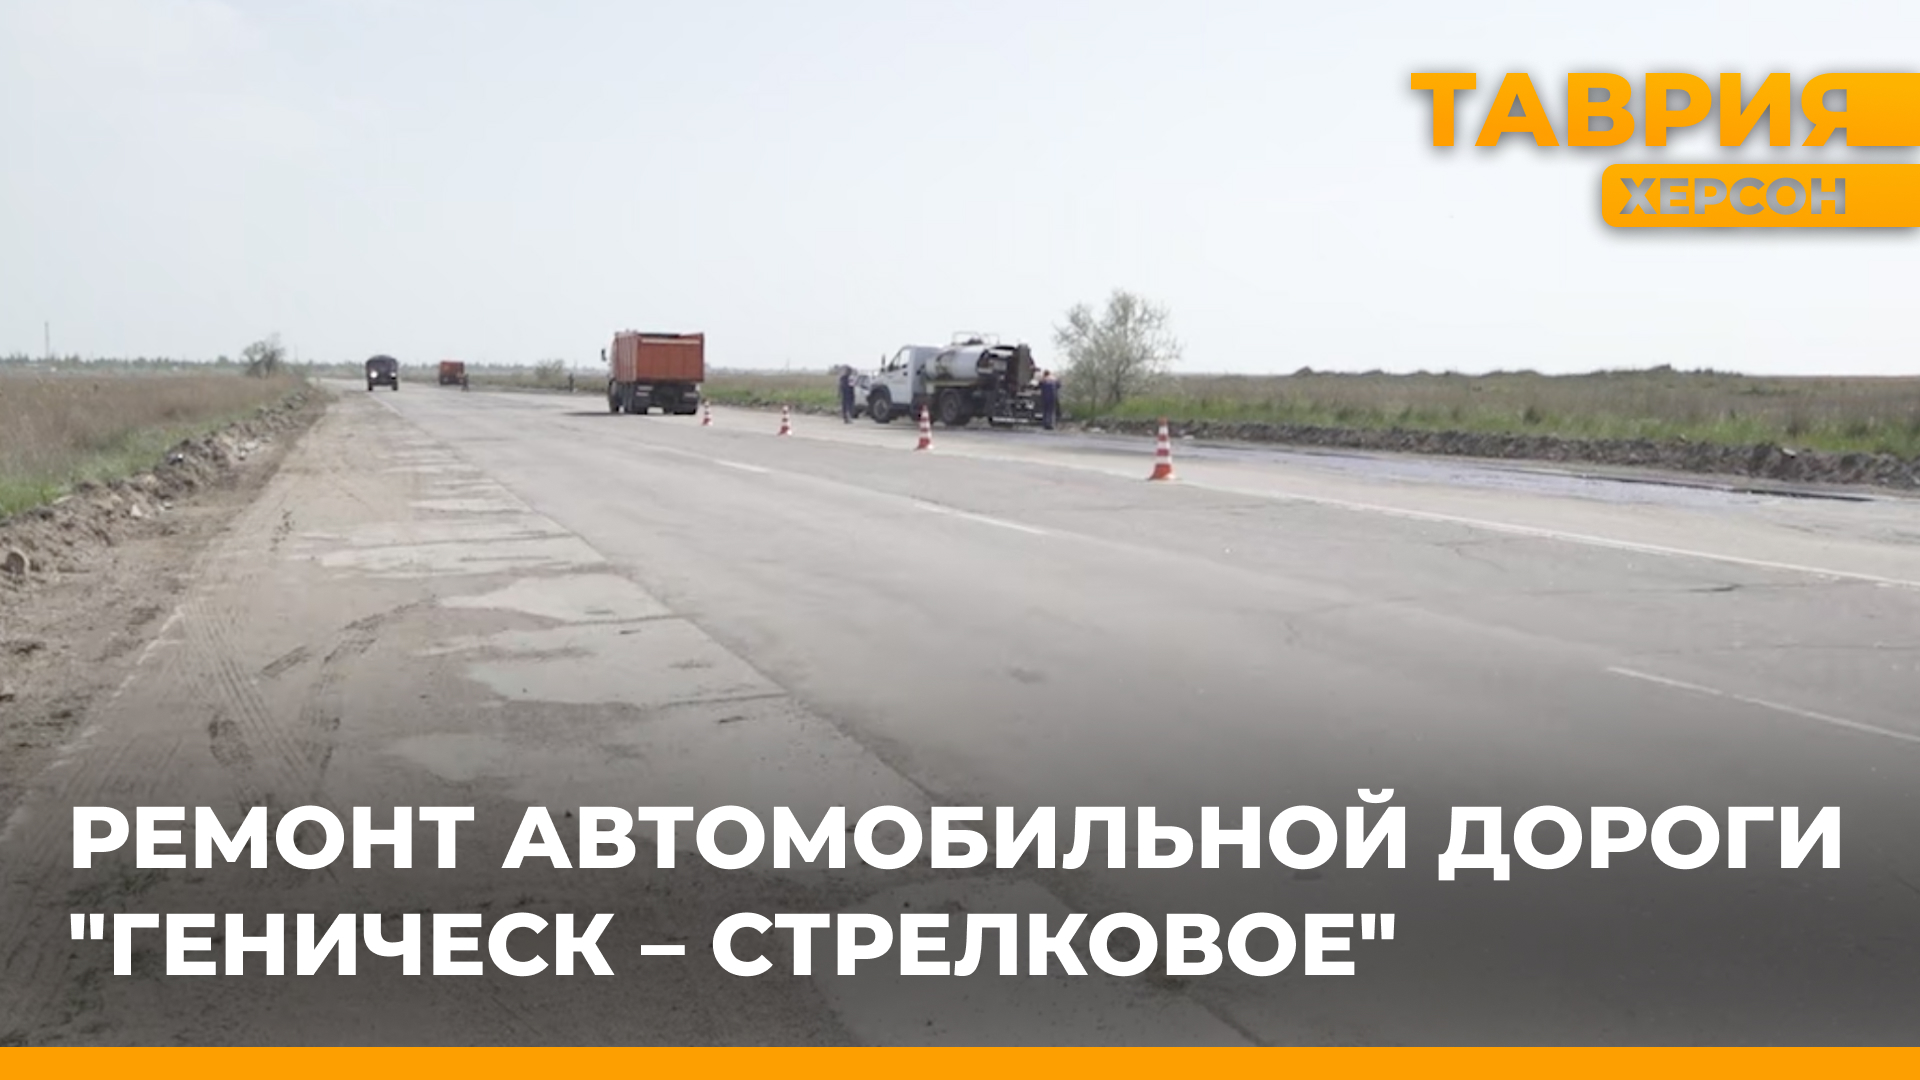 На автомобильной дороге "Геническ - Стрелковое" ведутся работы по восстановлению дорожного полотна